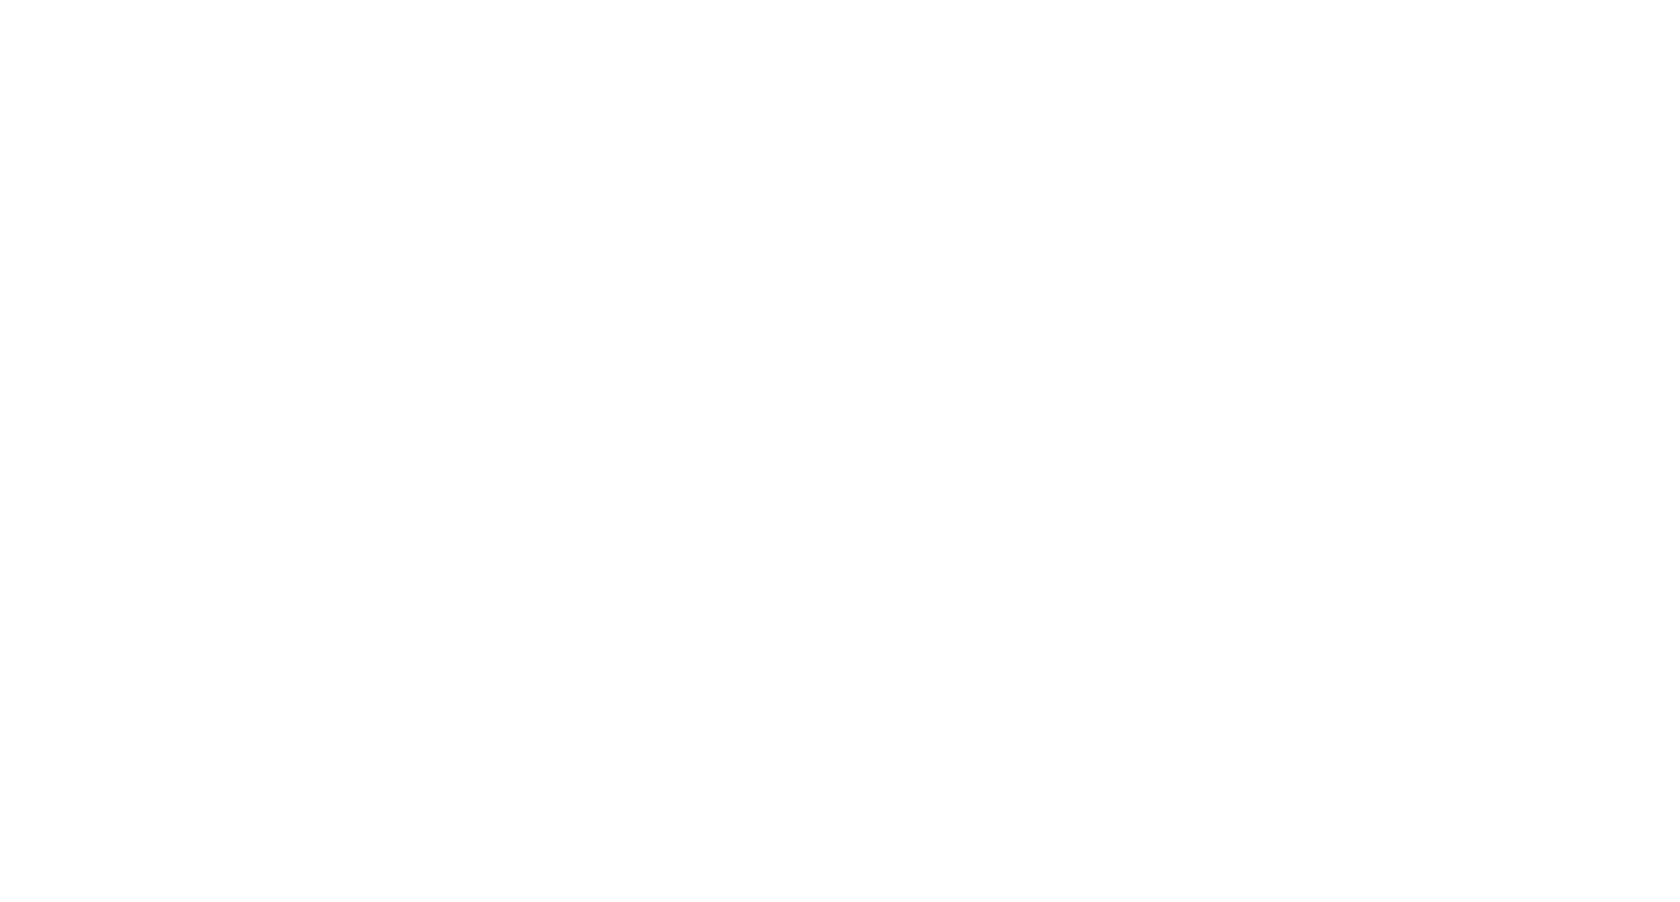 оригинальный шрифтовой логотип пиццерии со встроенным УТП в виде перевернутой буквы D и крафтовой текстурой